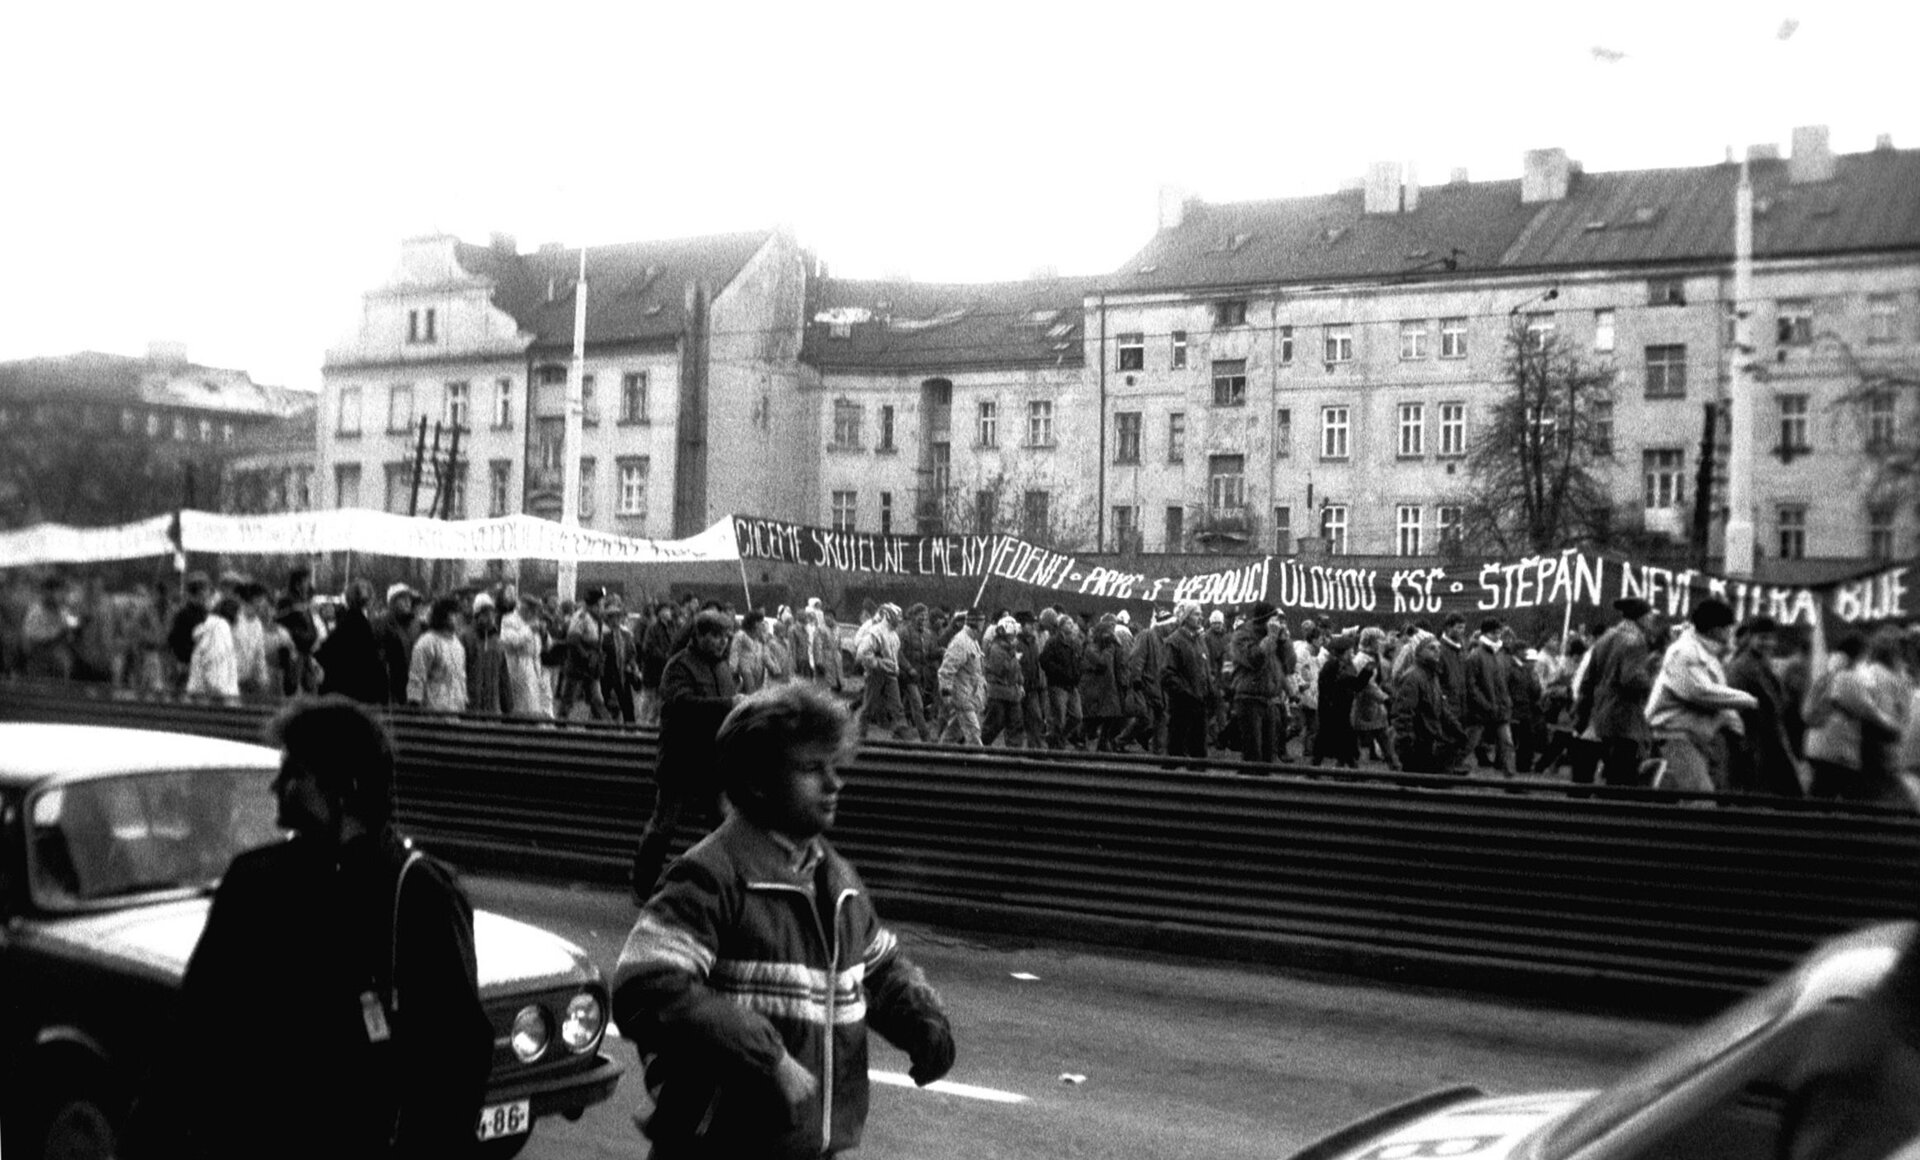 Na czarno-białym zdjęciu demonstracja. Tłum idzie ulicą, transparenty z napisami w języku czeskim.